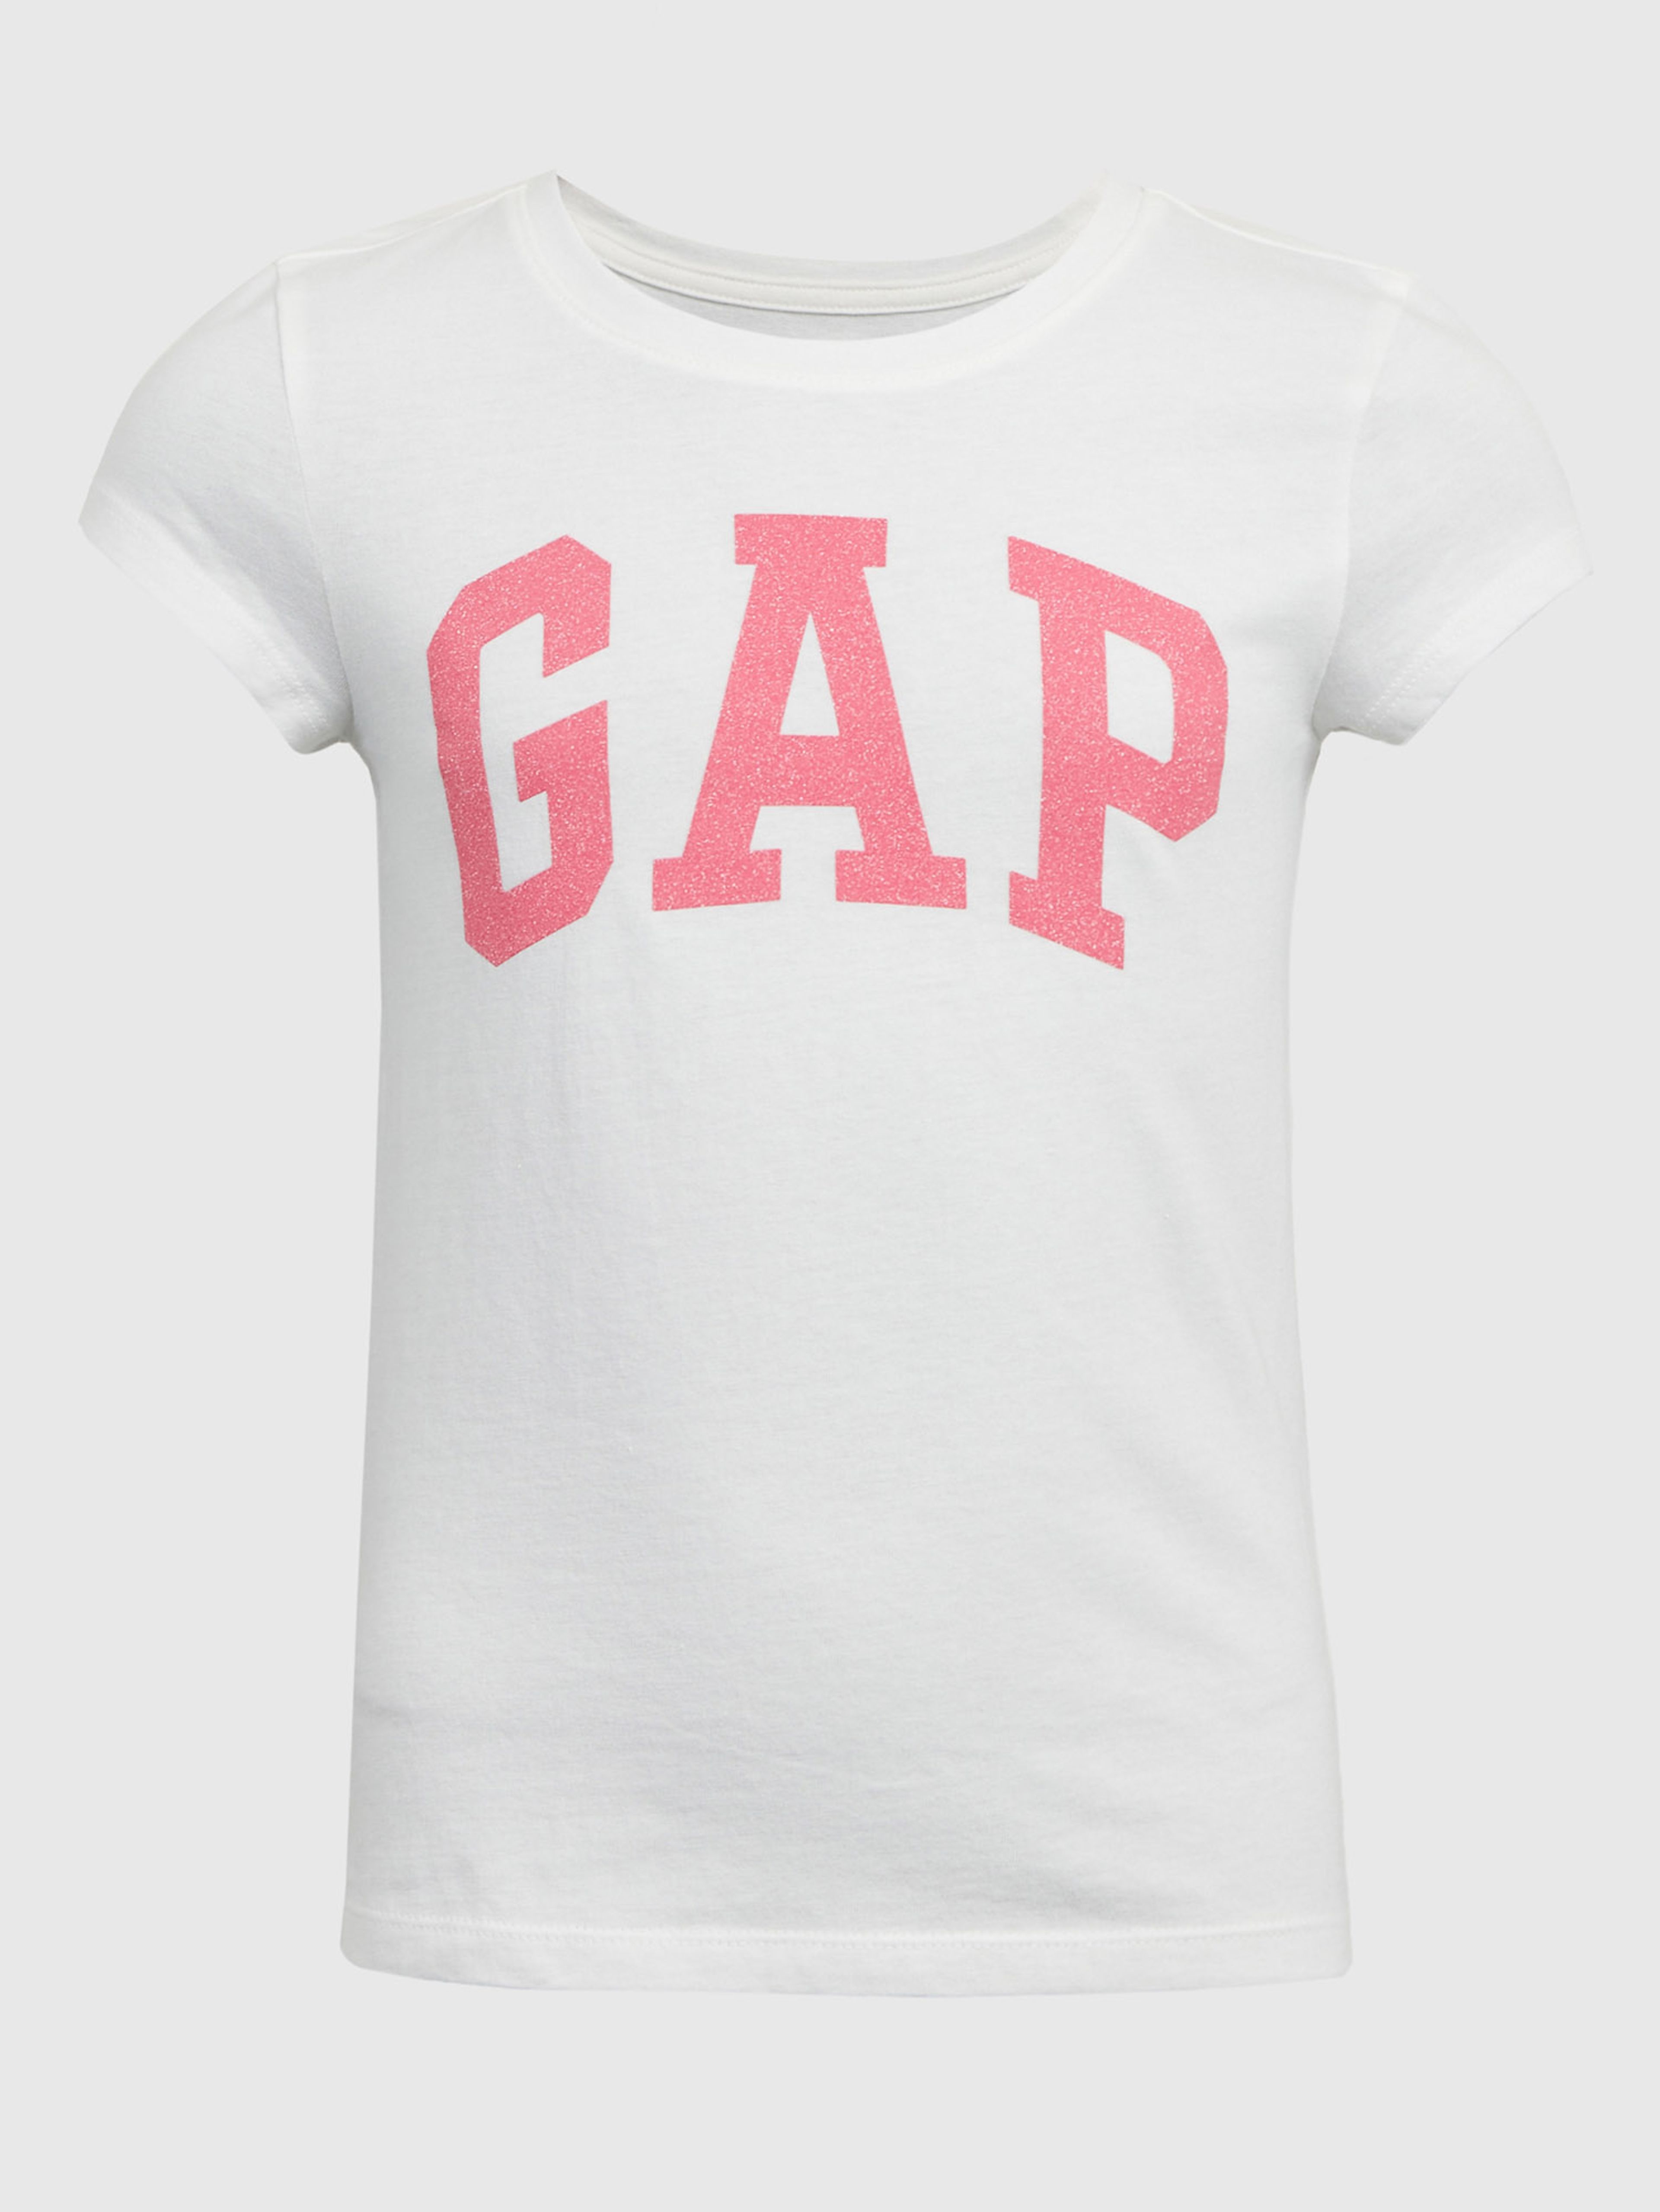 Dětské tričko s logem GAP